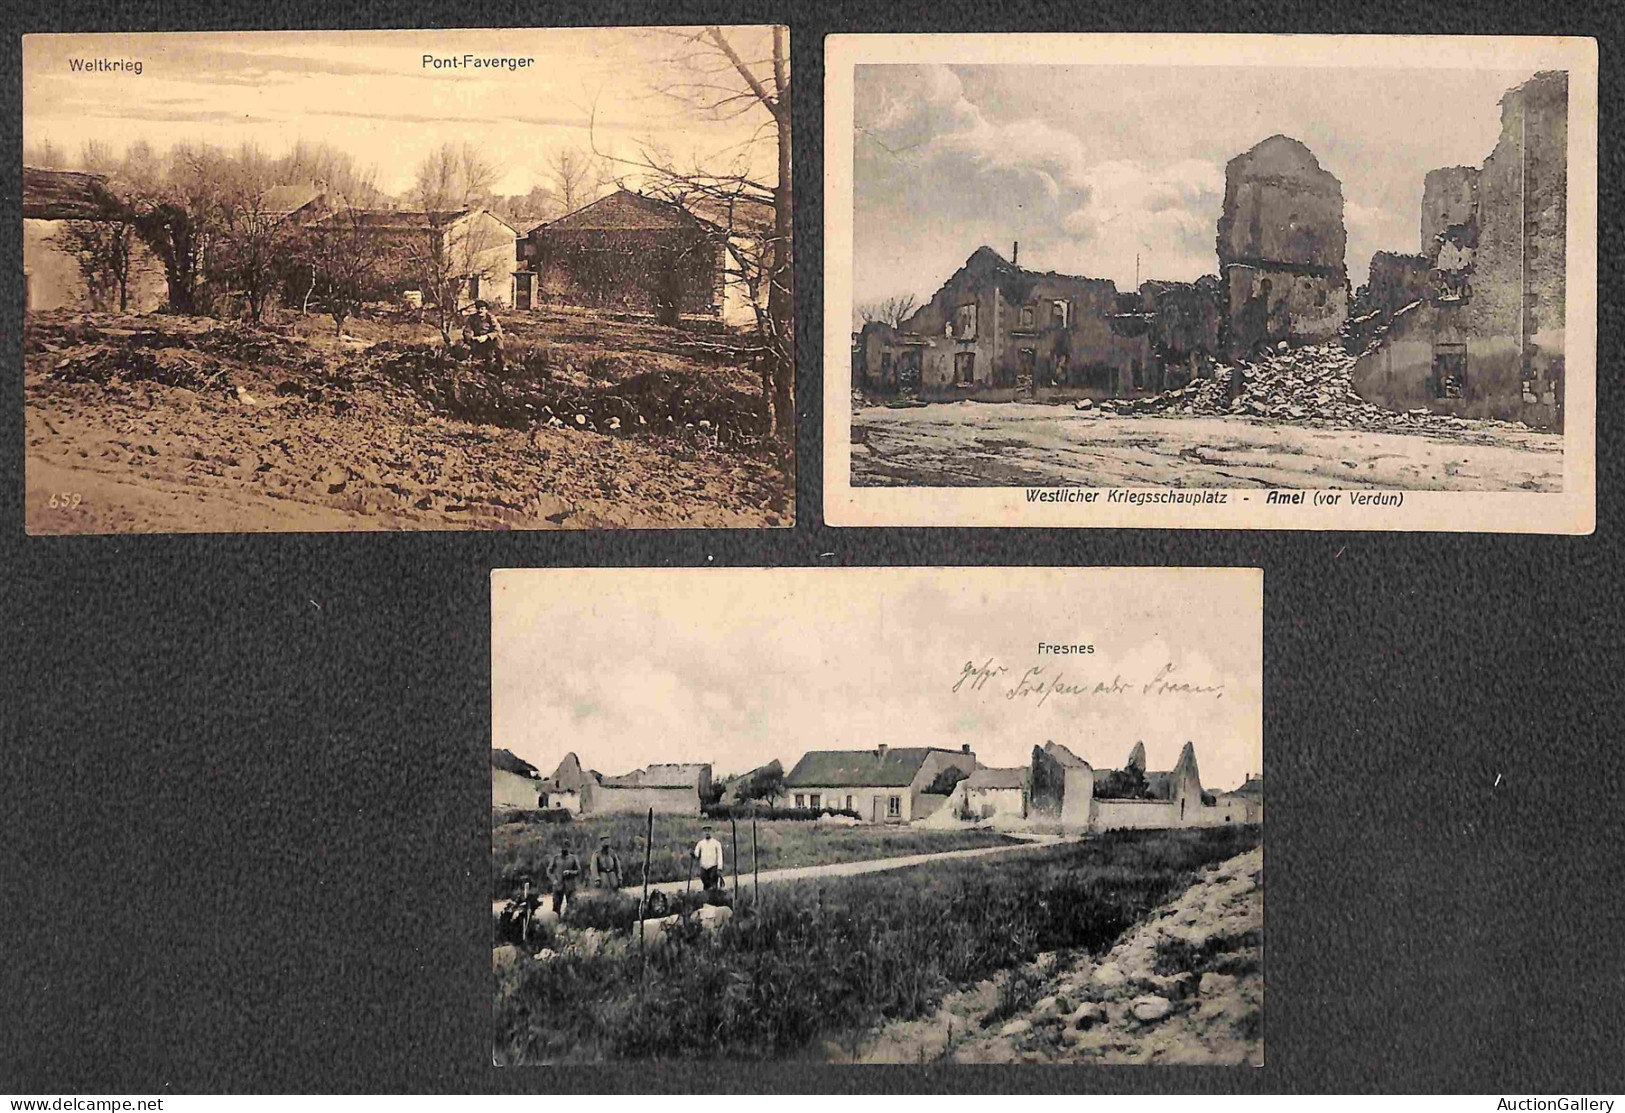 Lotti e Collezioni - Area Italiana  - CARTOLINE - 1914/1920 - Piccolo insieme di 11 cartoline di alcuni paesini europei 